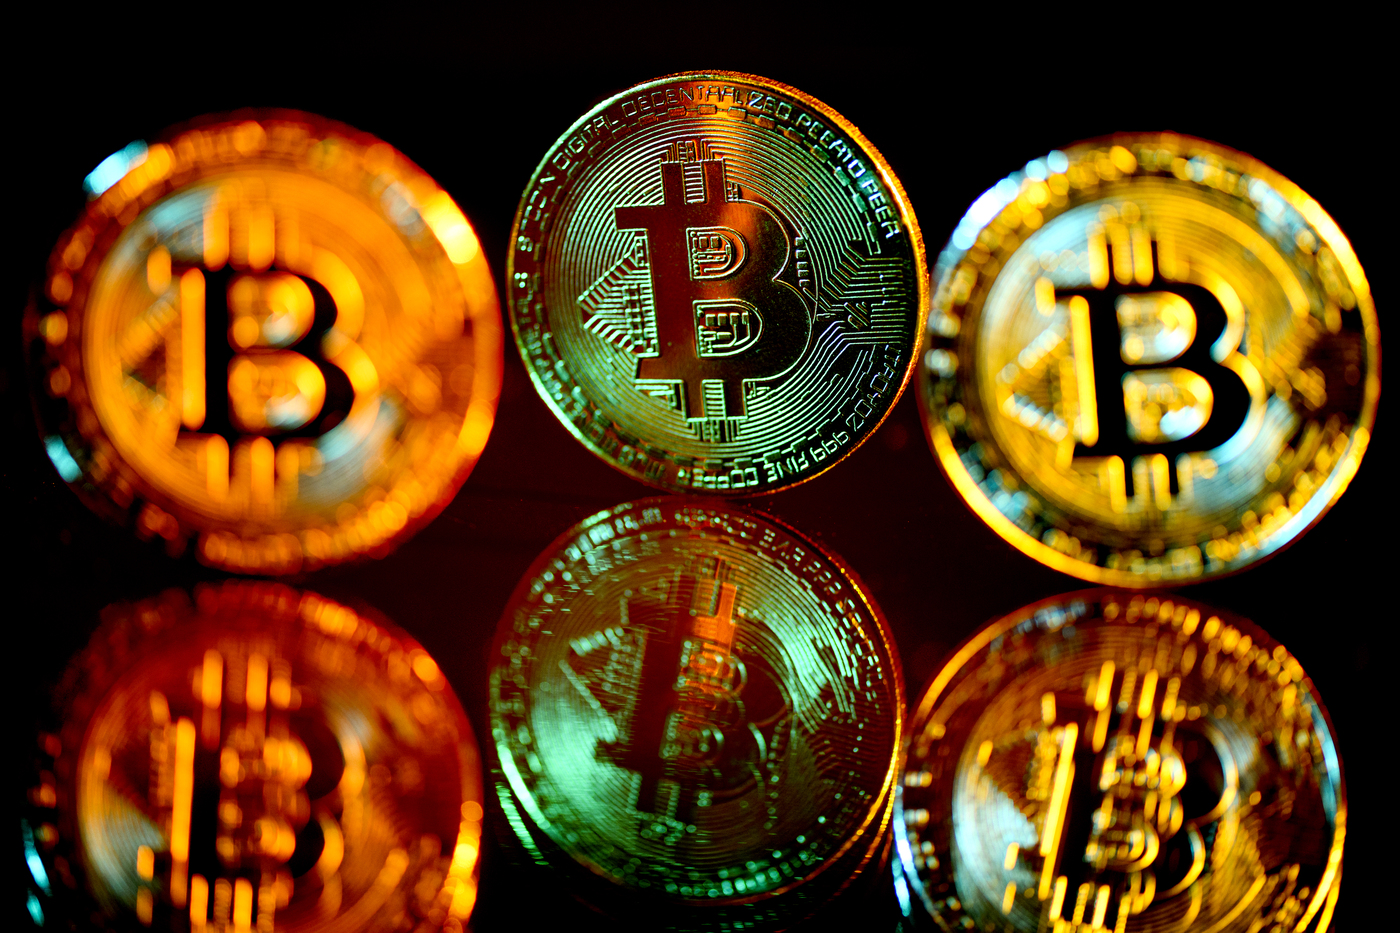 Bitcoin gold coins.